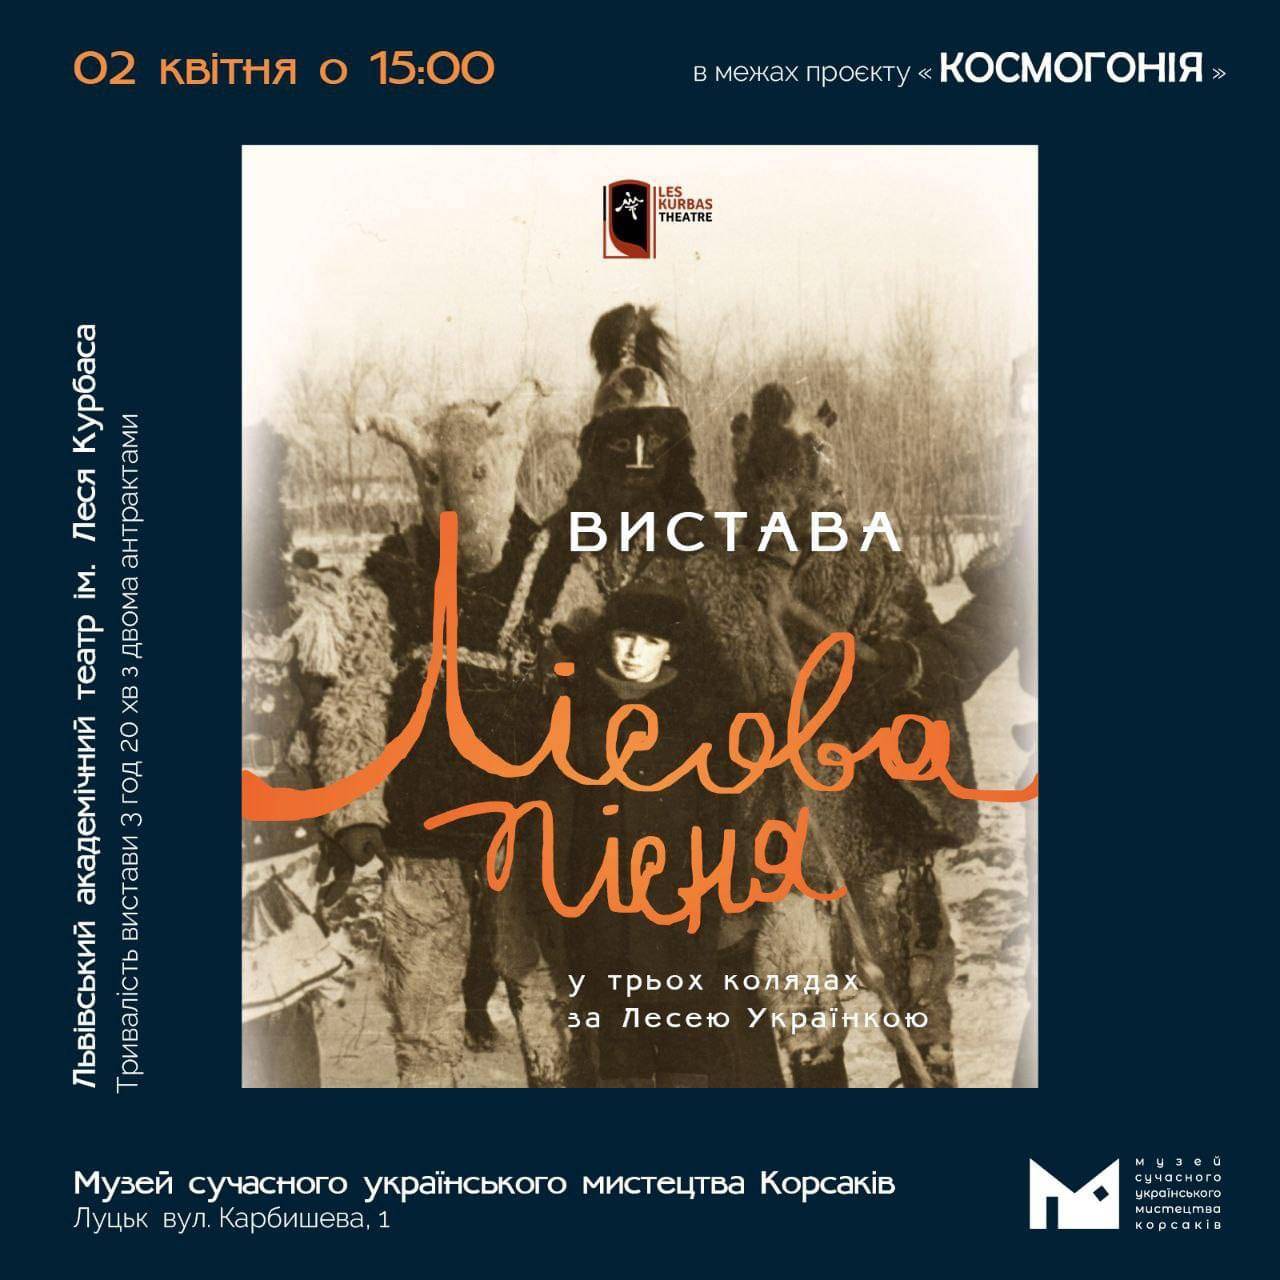 (Українська) 2 квітня о 15:00 у МСУМК відбудеться благодійна вистава «ЛІСОВА ПІСНЯ» від театру Леся Курбаса в Луцьку!